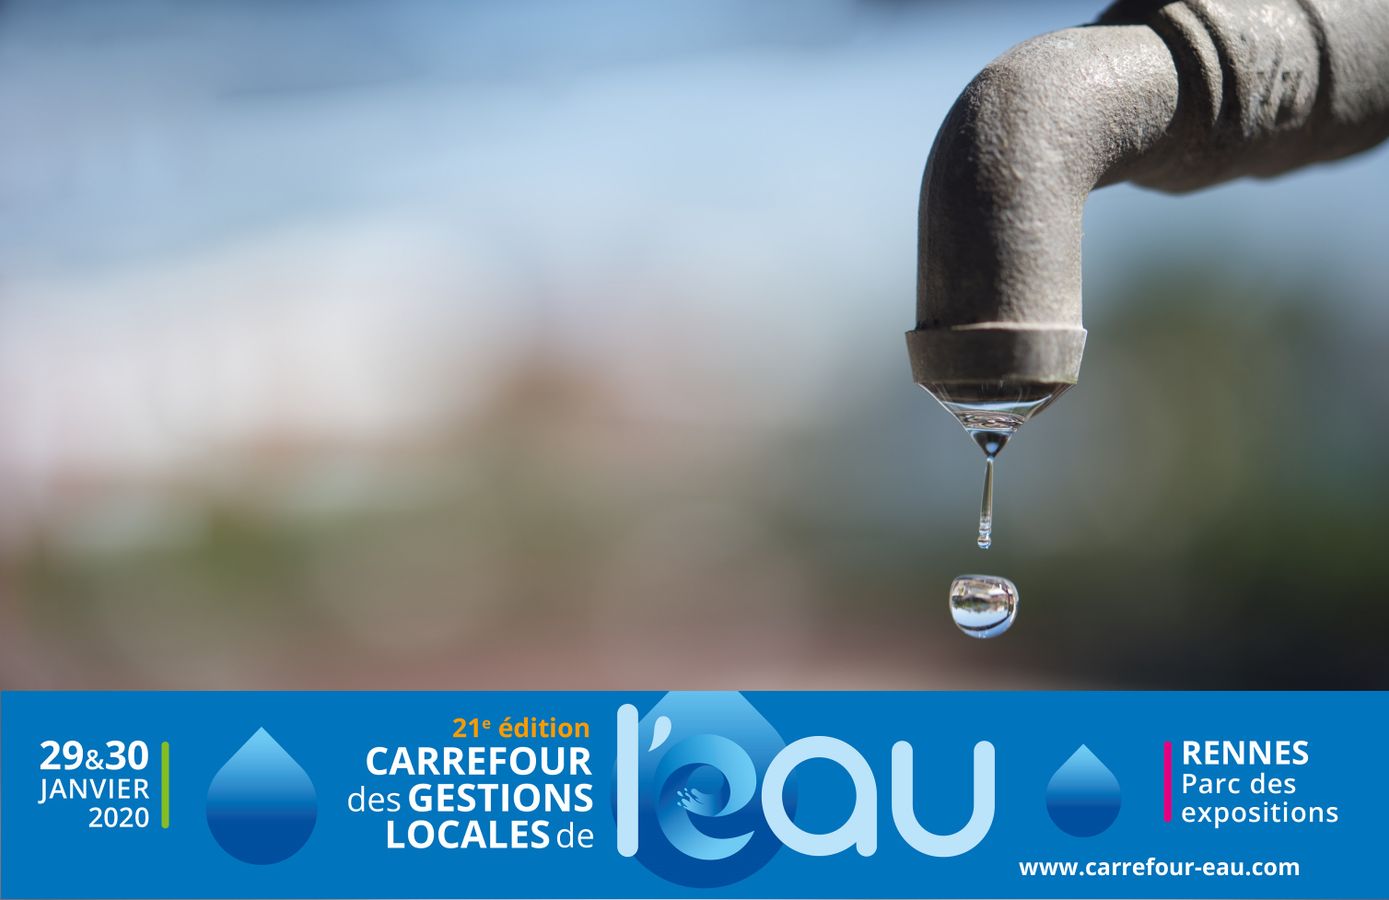 [CGLE21] Le « jour 0 » approche : informons, sensibilisons et agissons pour préserver la ressource en eau 